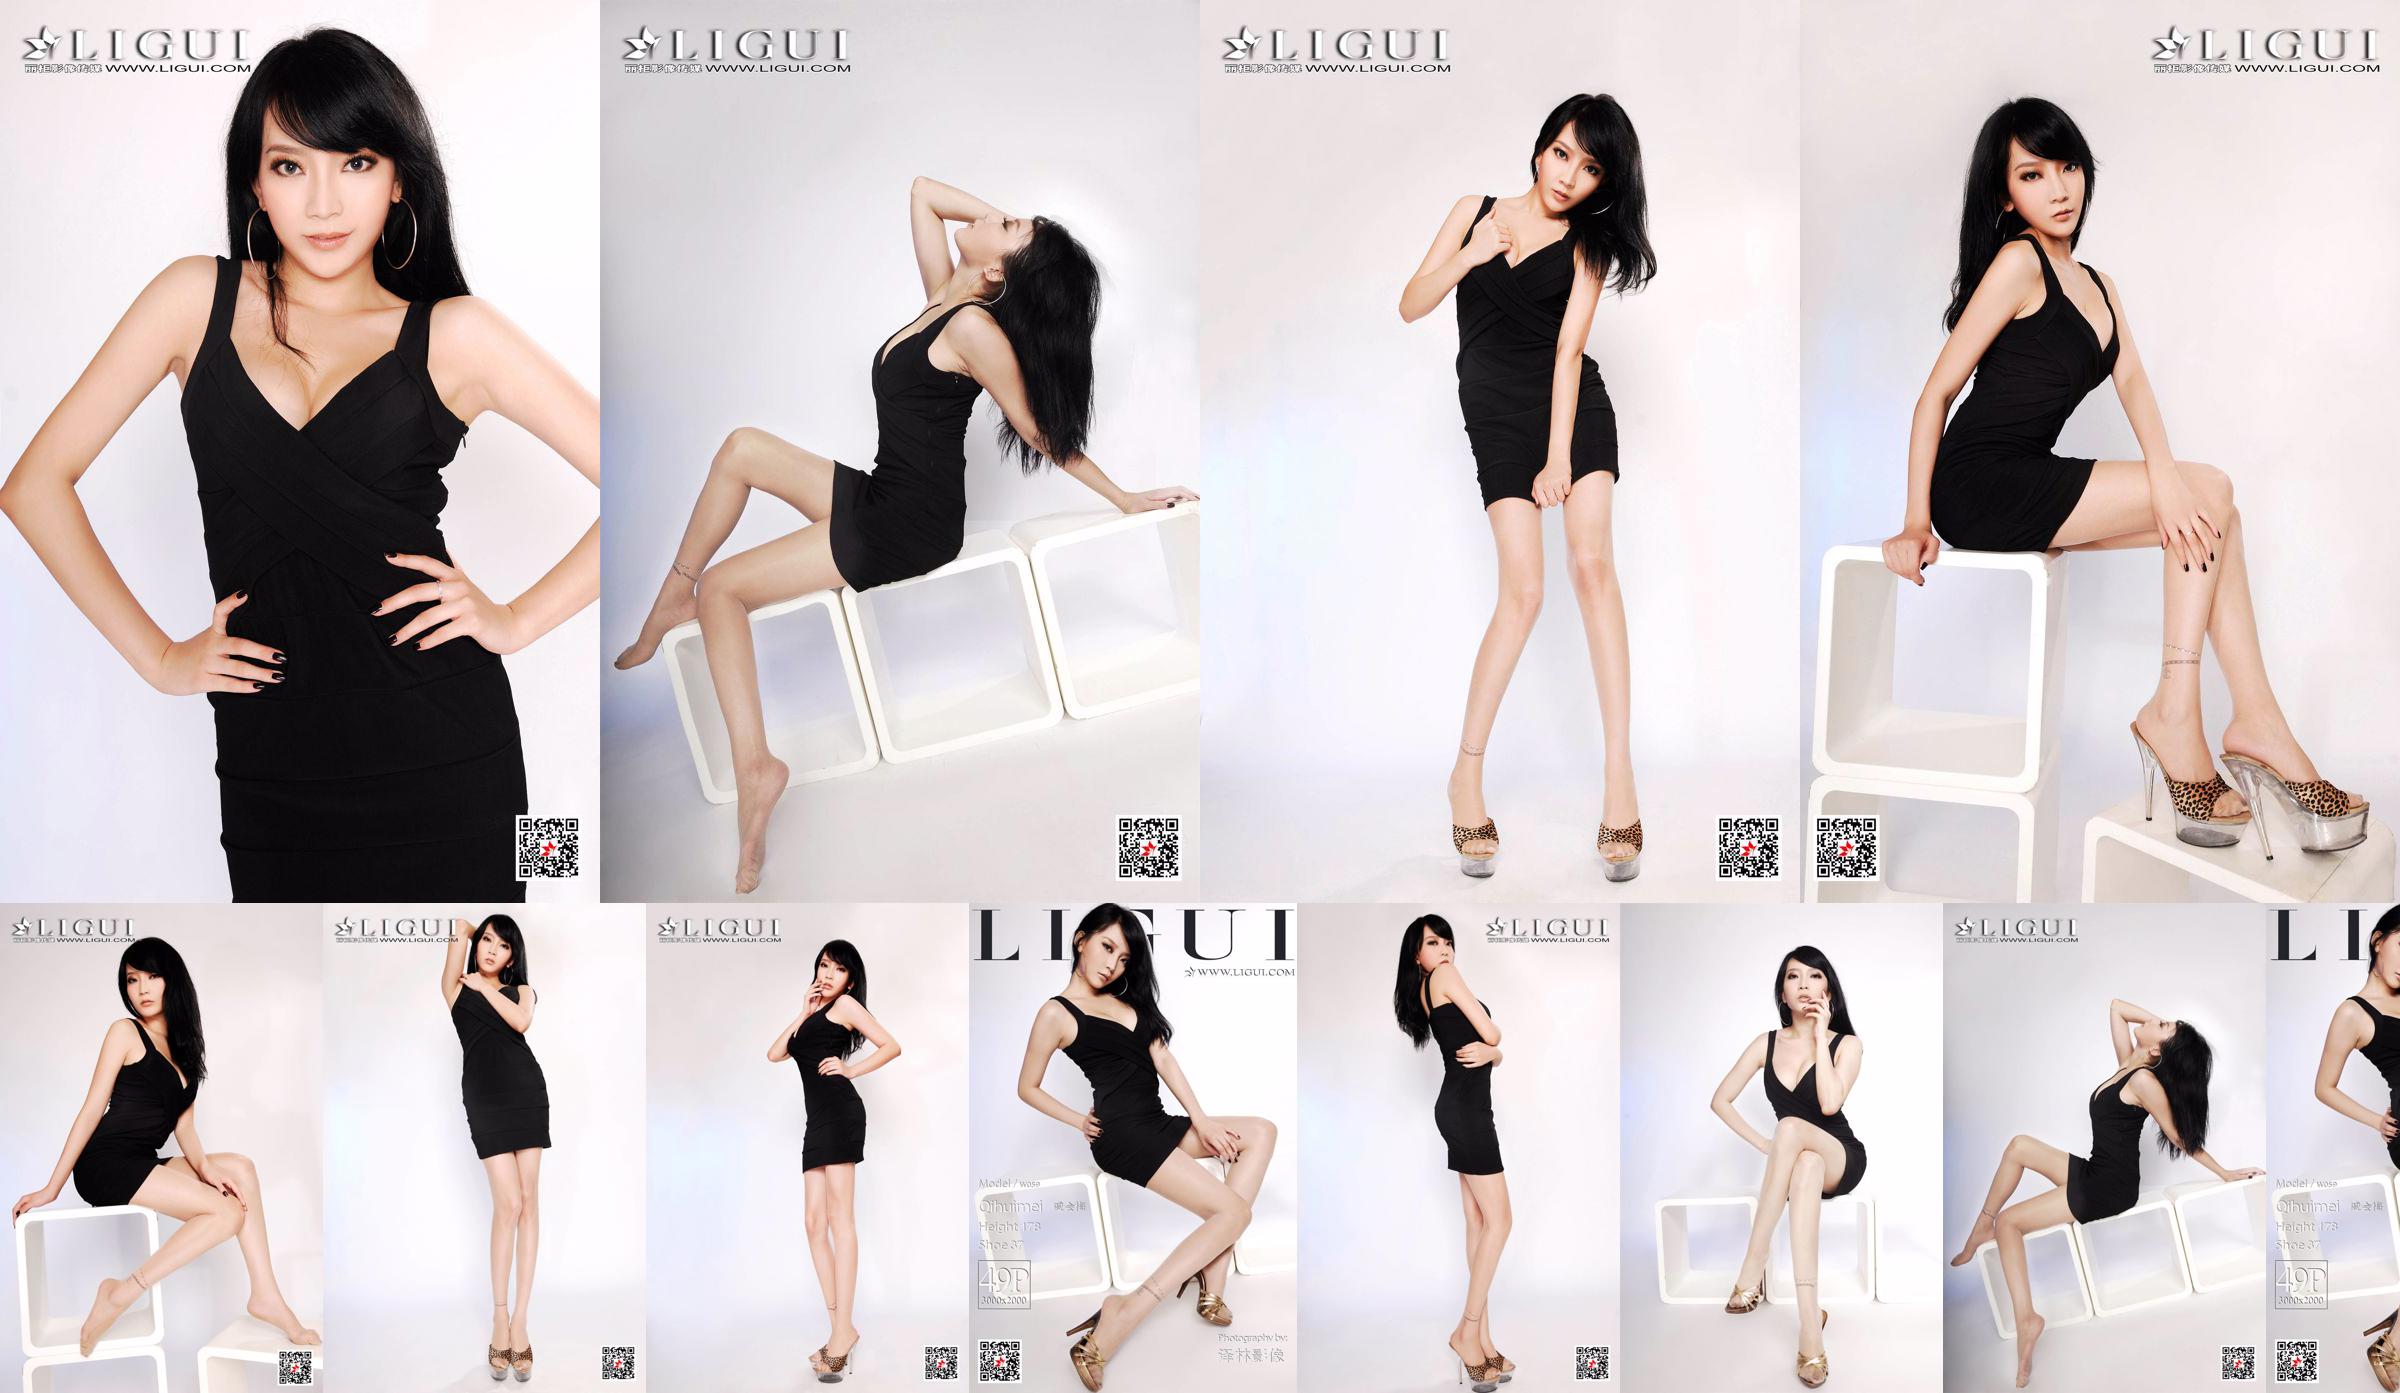 Người mẫu Qi Huimei "Chụp chân heo trong studio" [丽 柜 Ligui] No.9d7916 Trang 1